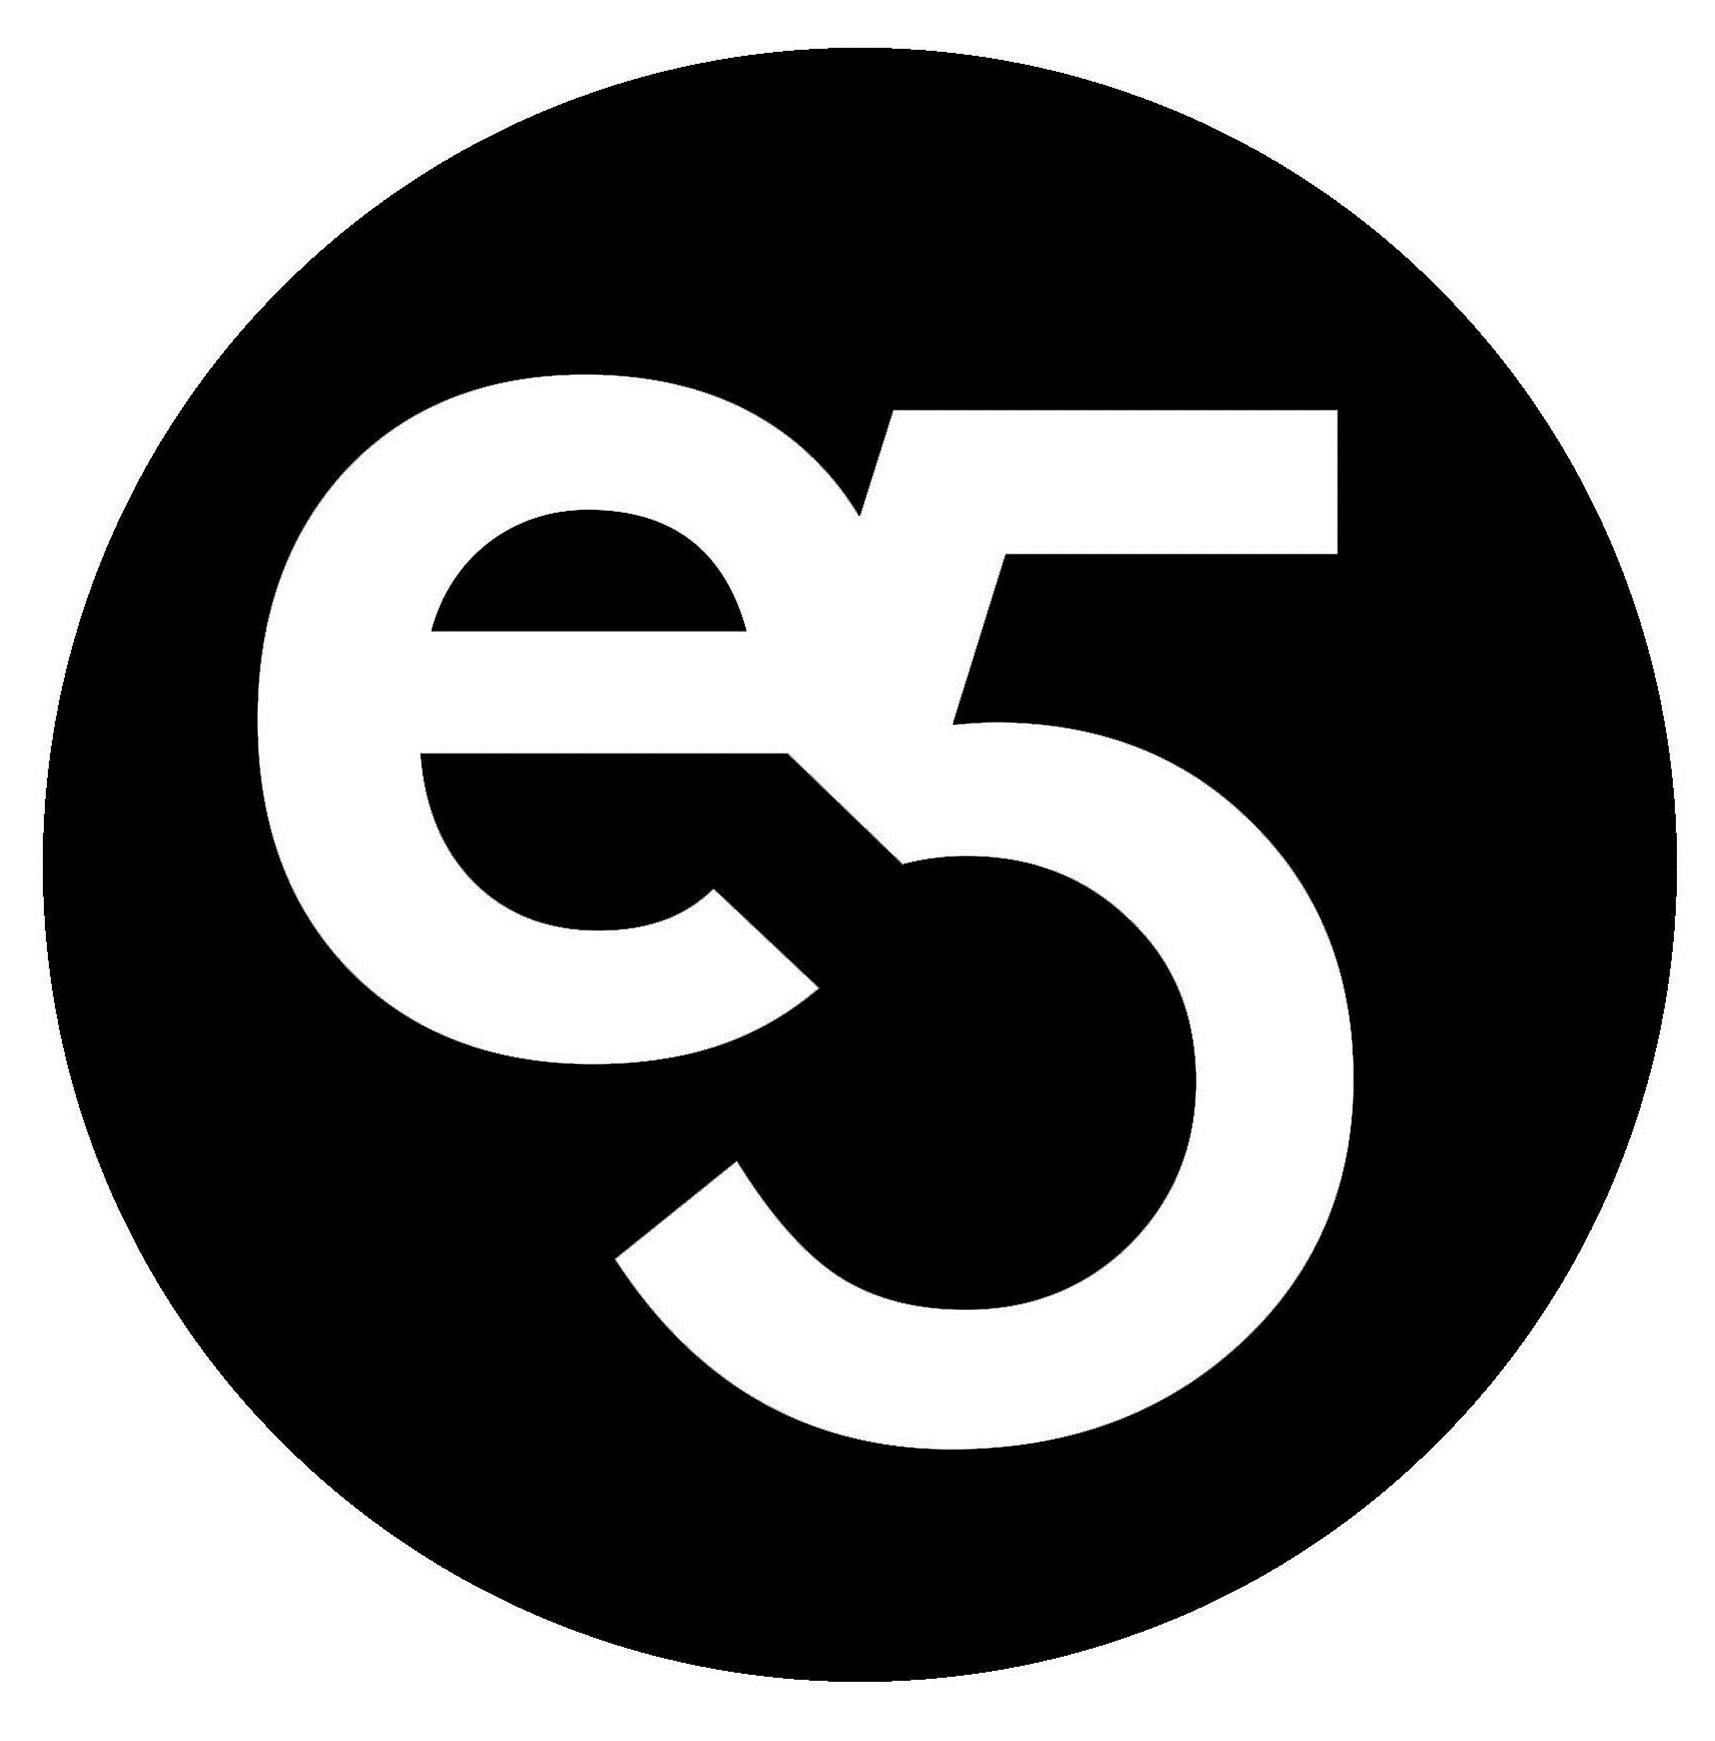 Trademark Logo E5